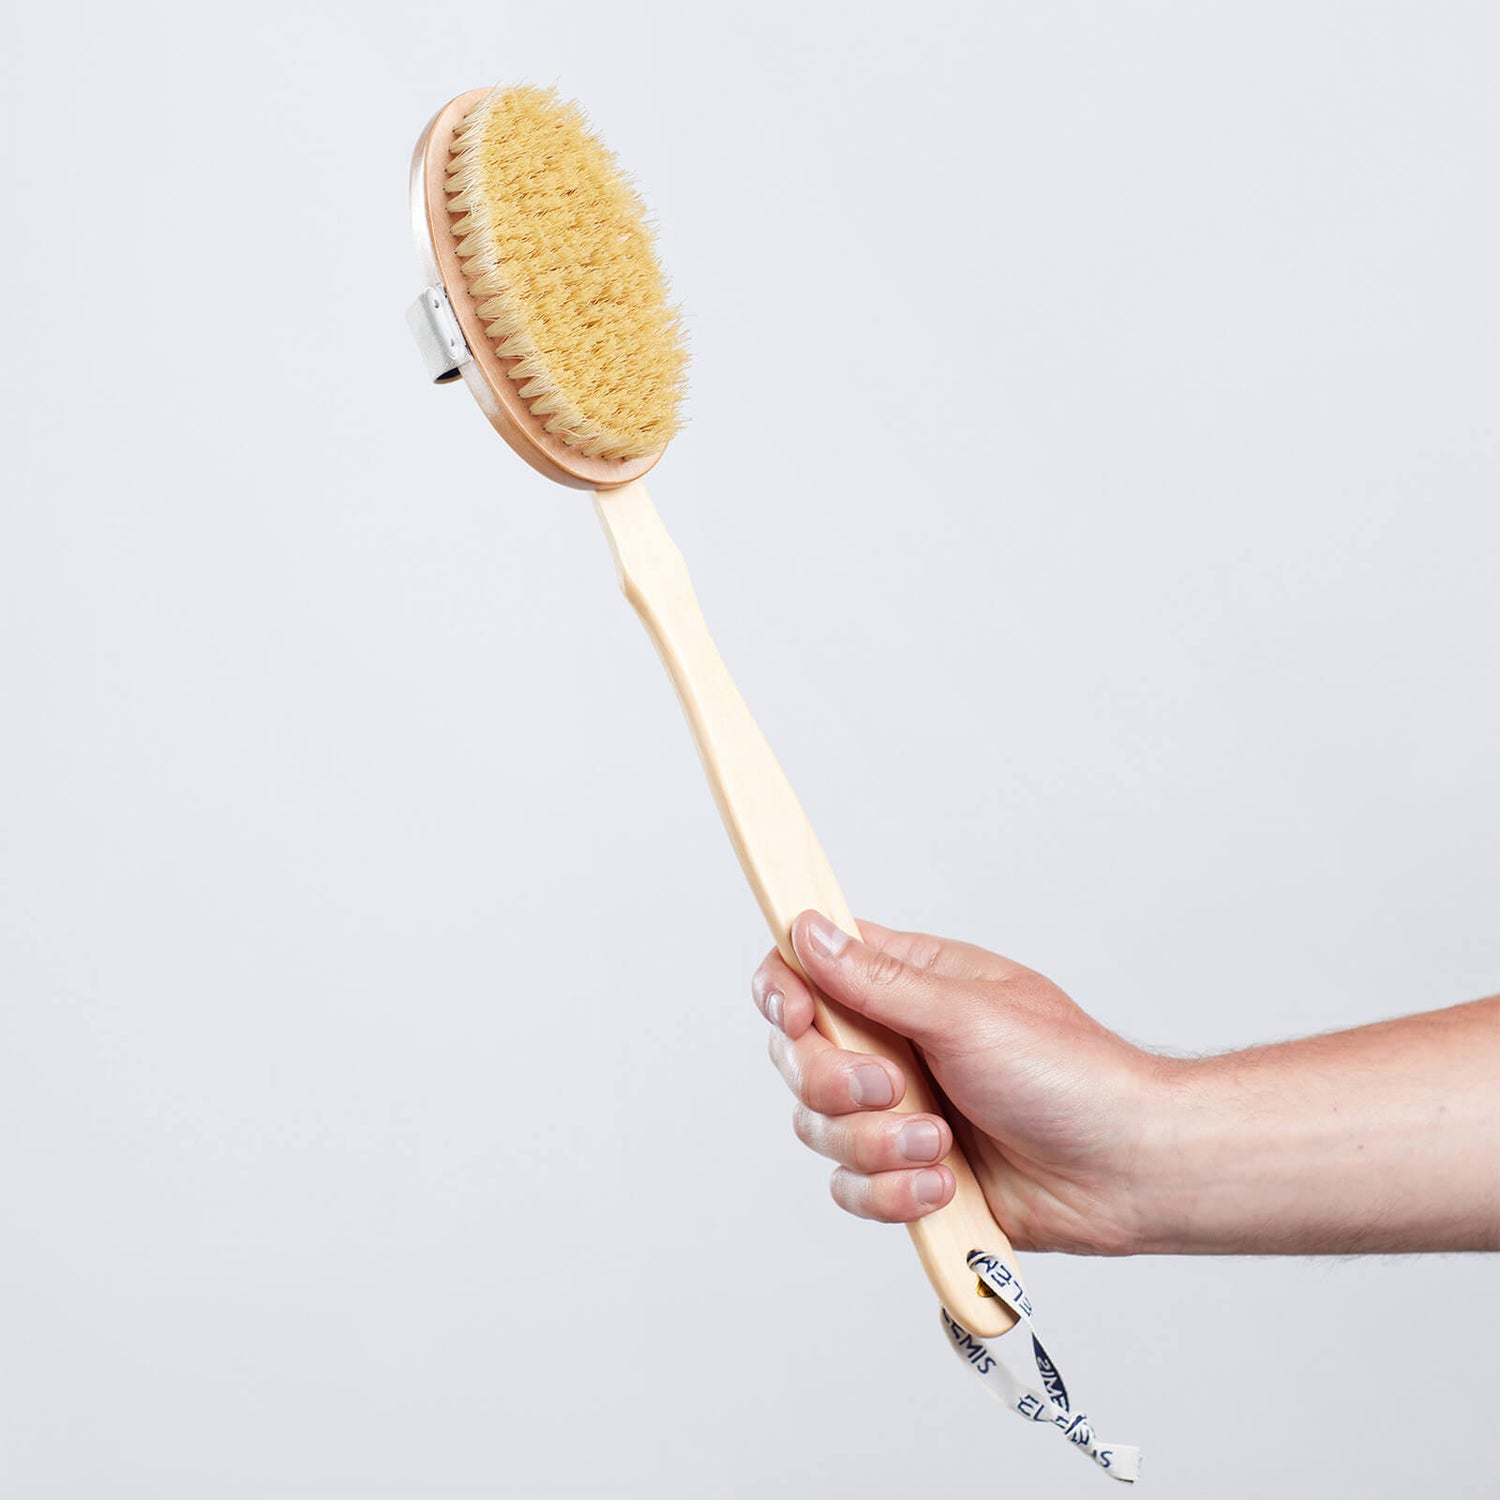 Wholesale | Soft Bristle Body Brushes